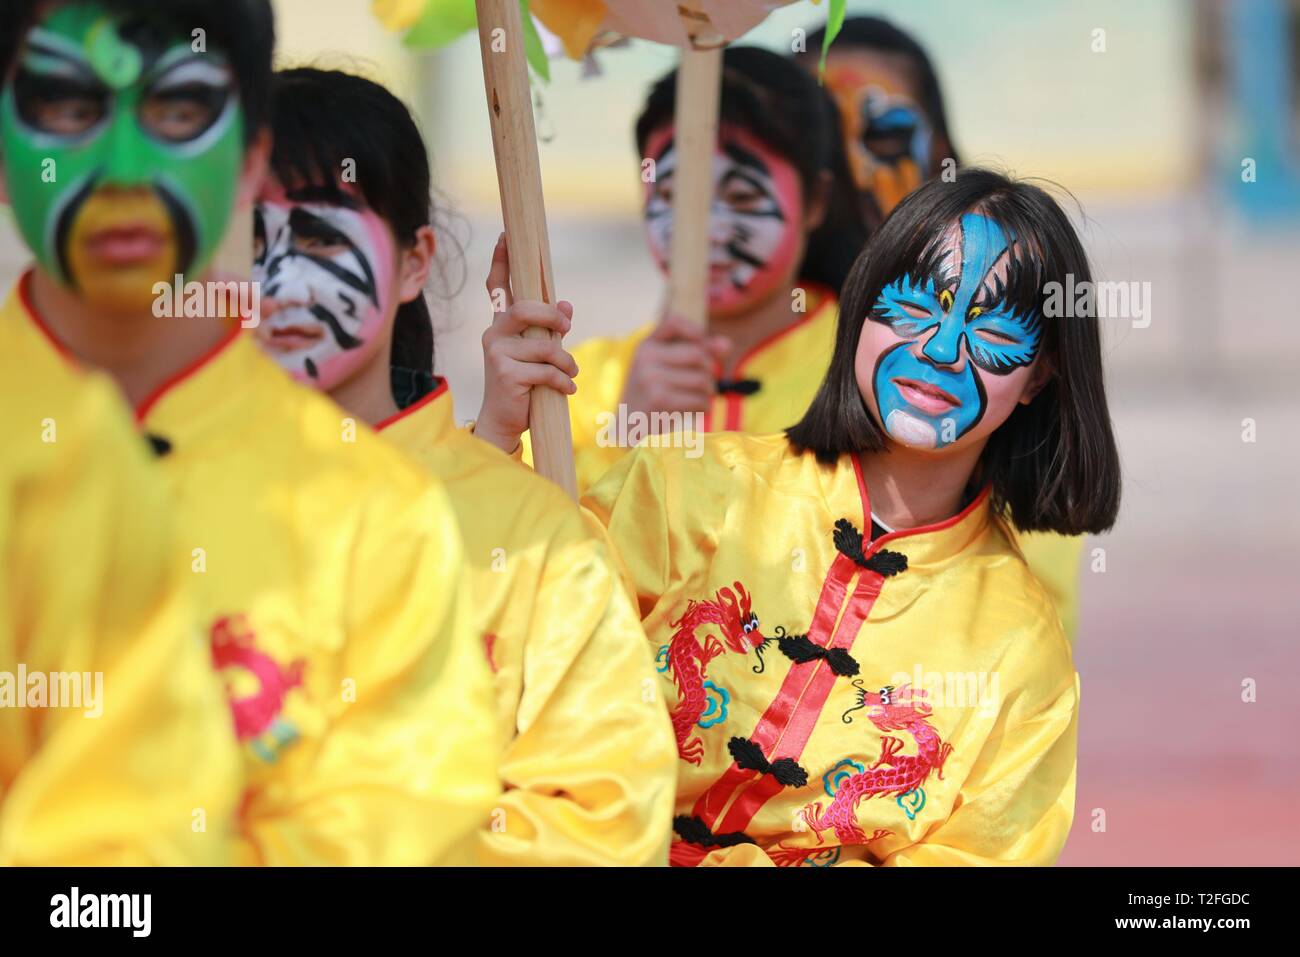 (190402) -- JINPING, 2 aprile 2019 (Xinhua) -- Gli studenti svolgono Longli il Drago ballo a Longli medio e la scuola primaria in Jinping County, a sud-ovest della Cina di Guizhou, il 20 marzo 2019. Classificato come Patrimonio culturale immateriale di Guizhou in 2005, Longli il drago danza ha una storia di più di 600 anni. Esso è caratterizzato dai ballerini' bella faccia dipinta. Dal 2008, Longli's dragon dance è stato introdotto in Longli medio e la scuola primaria di cui gli studenti godono di due ore alla settimana con dragon dance masters per saperne di costume rendendo, danza competenze e faccia pai Foto Stock